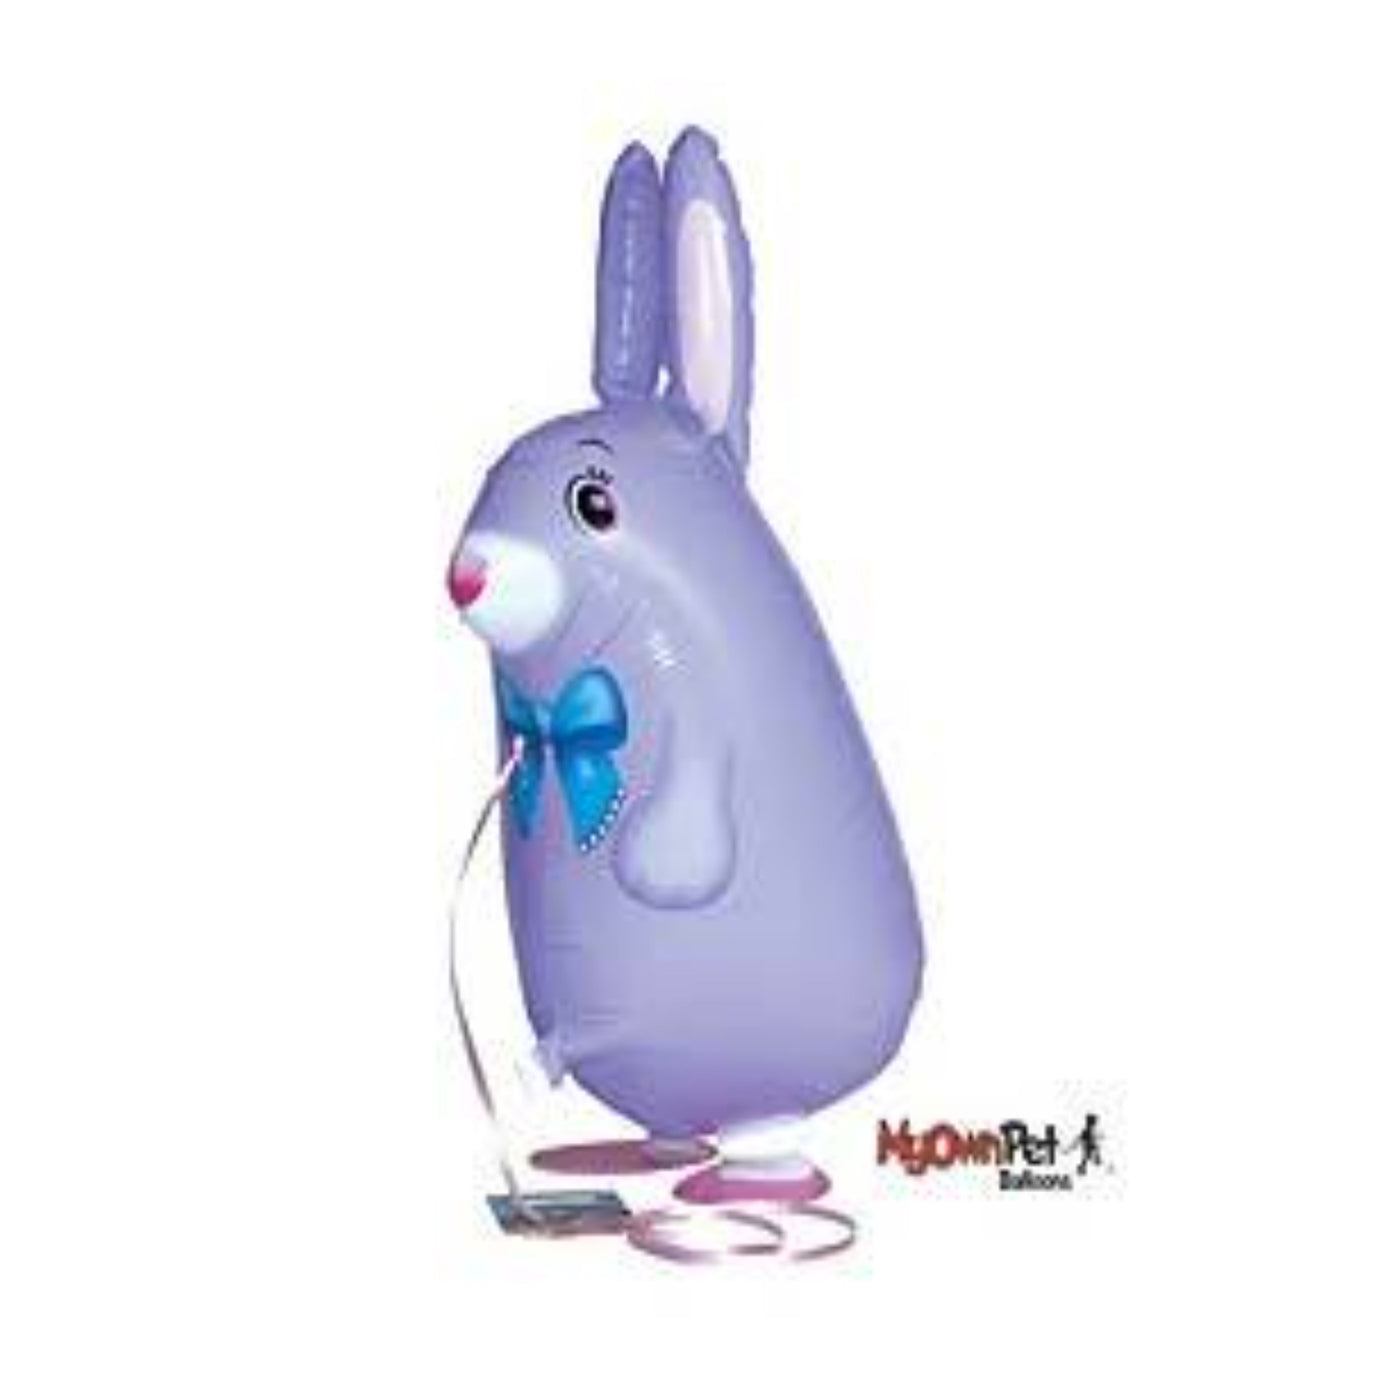 Purple Pet Bunny Balloon Toy